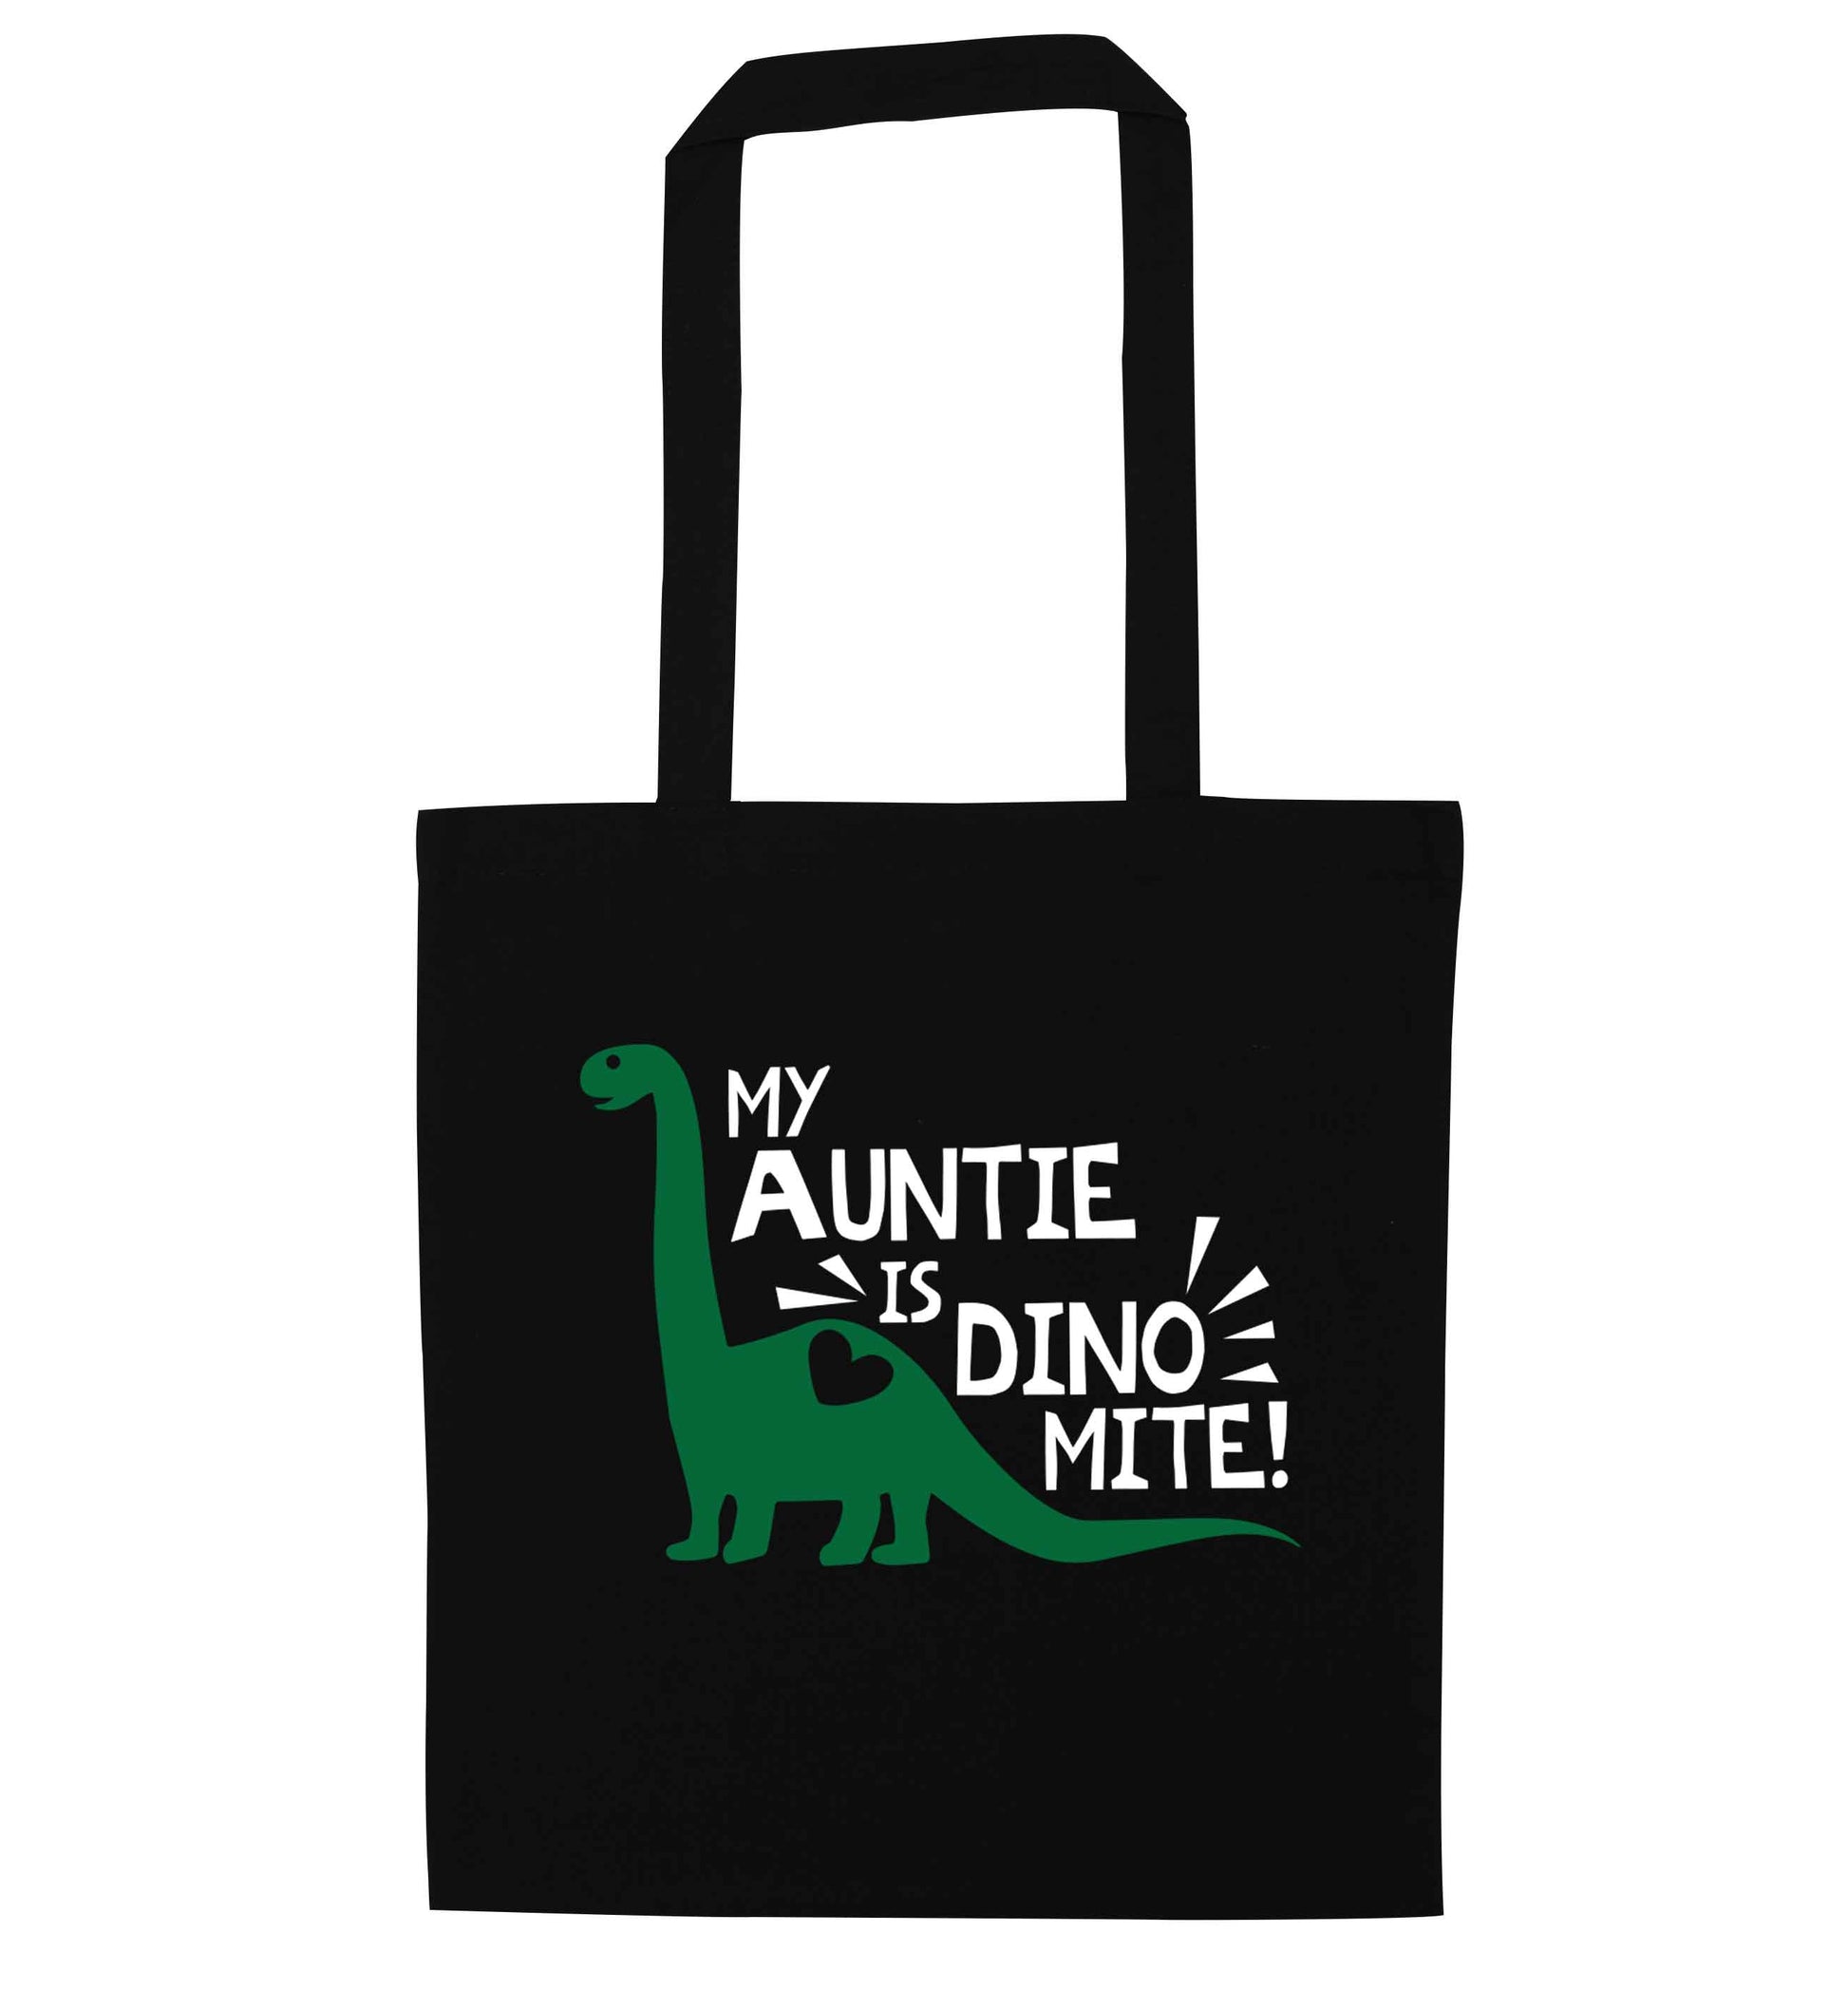 My auntie is dinomite! black tote bag